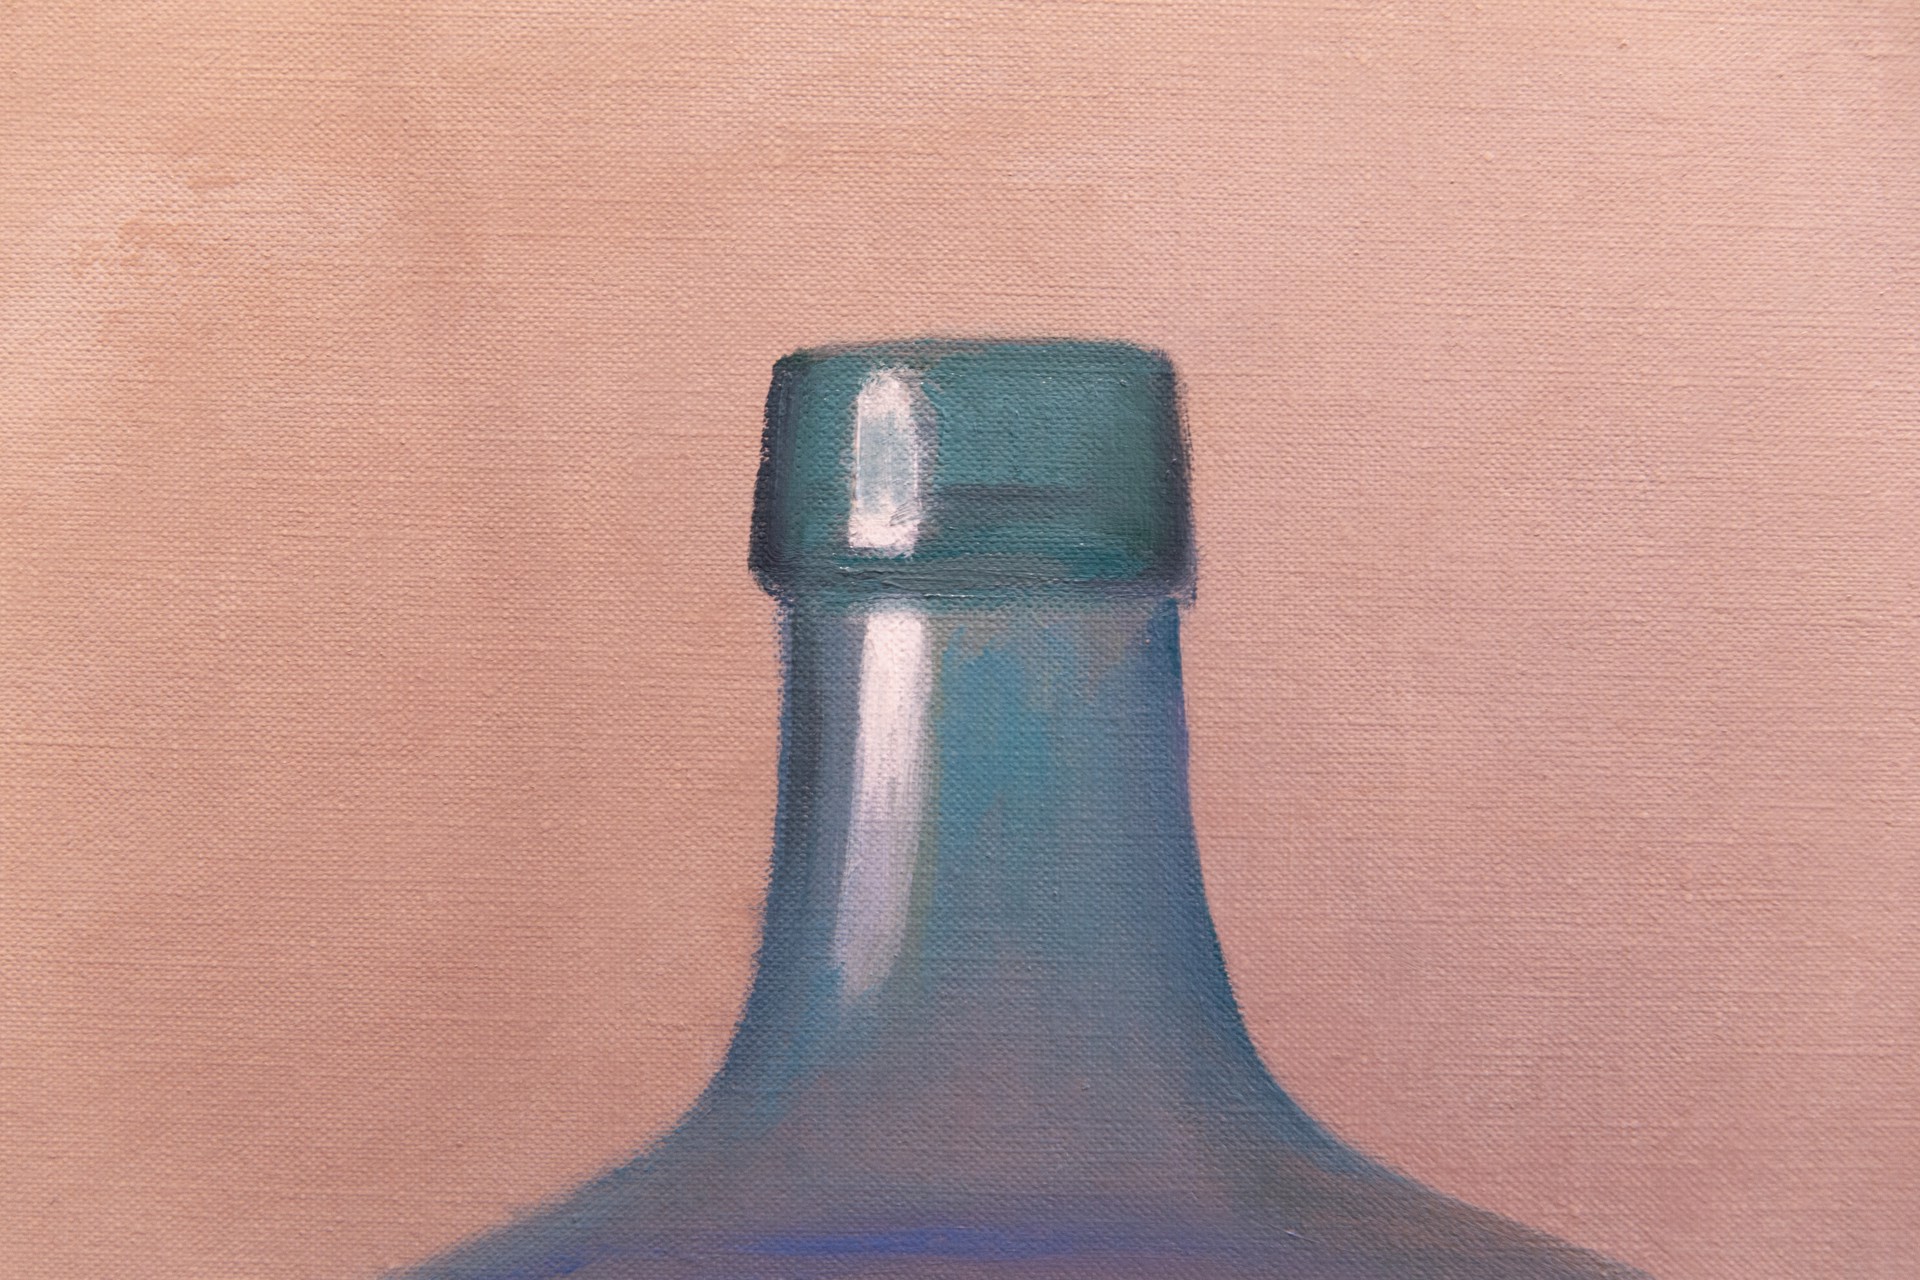 Arrangement with a Clear Glass Bottle by Robert Douglas Hunter